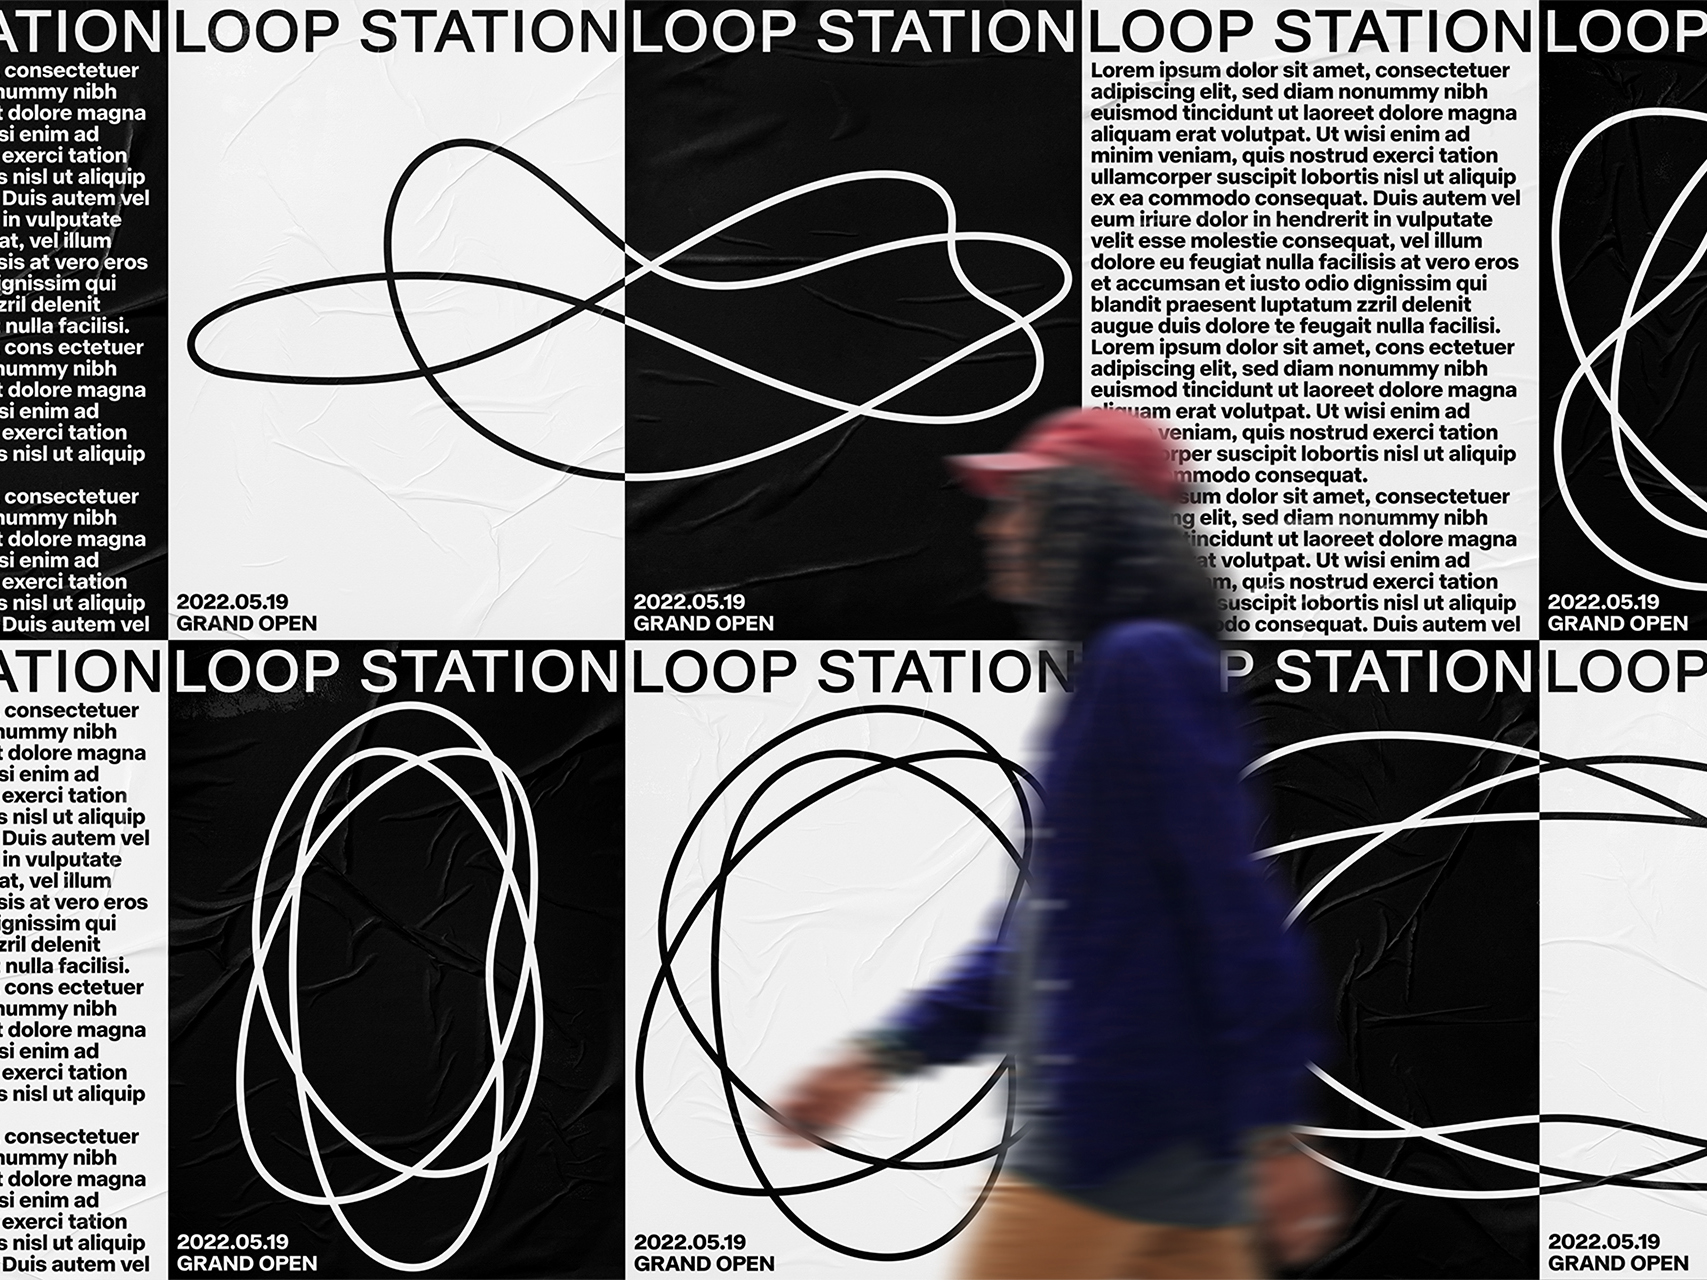 Loop Station Visual Identity